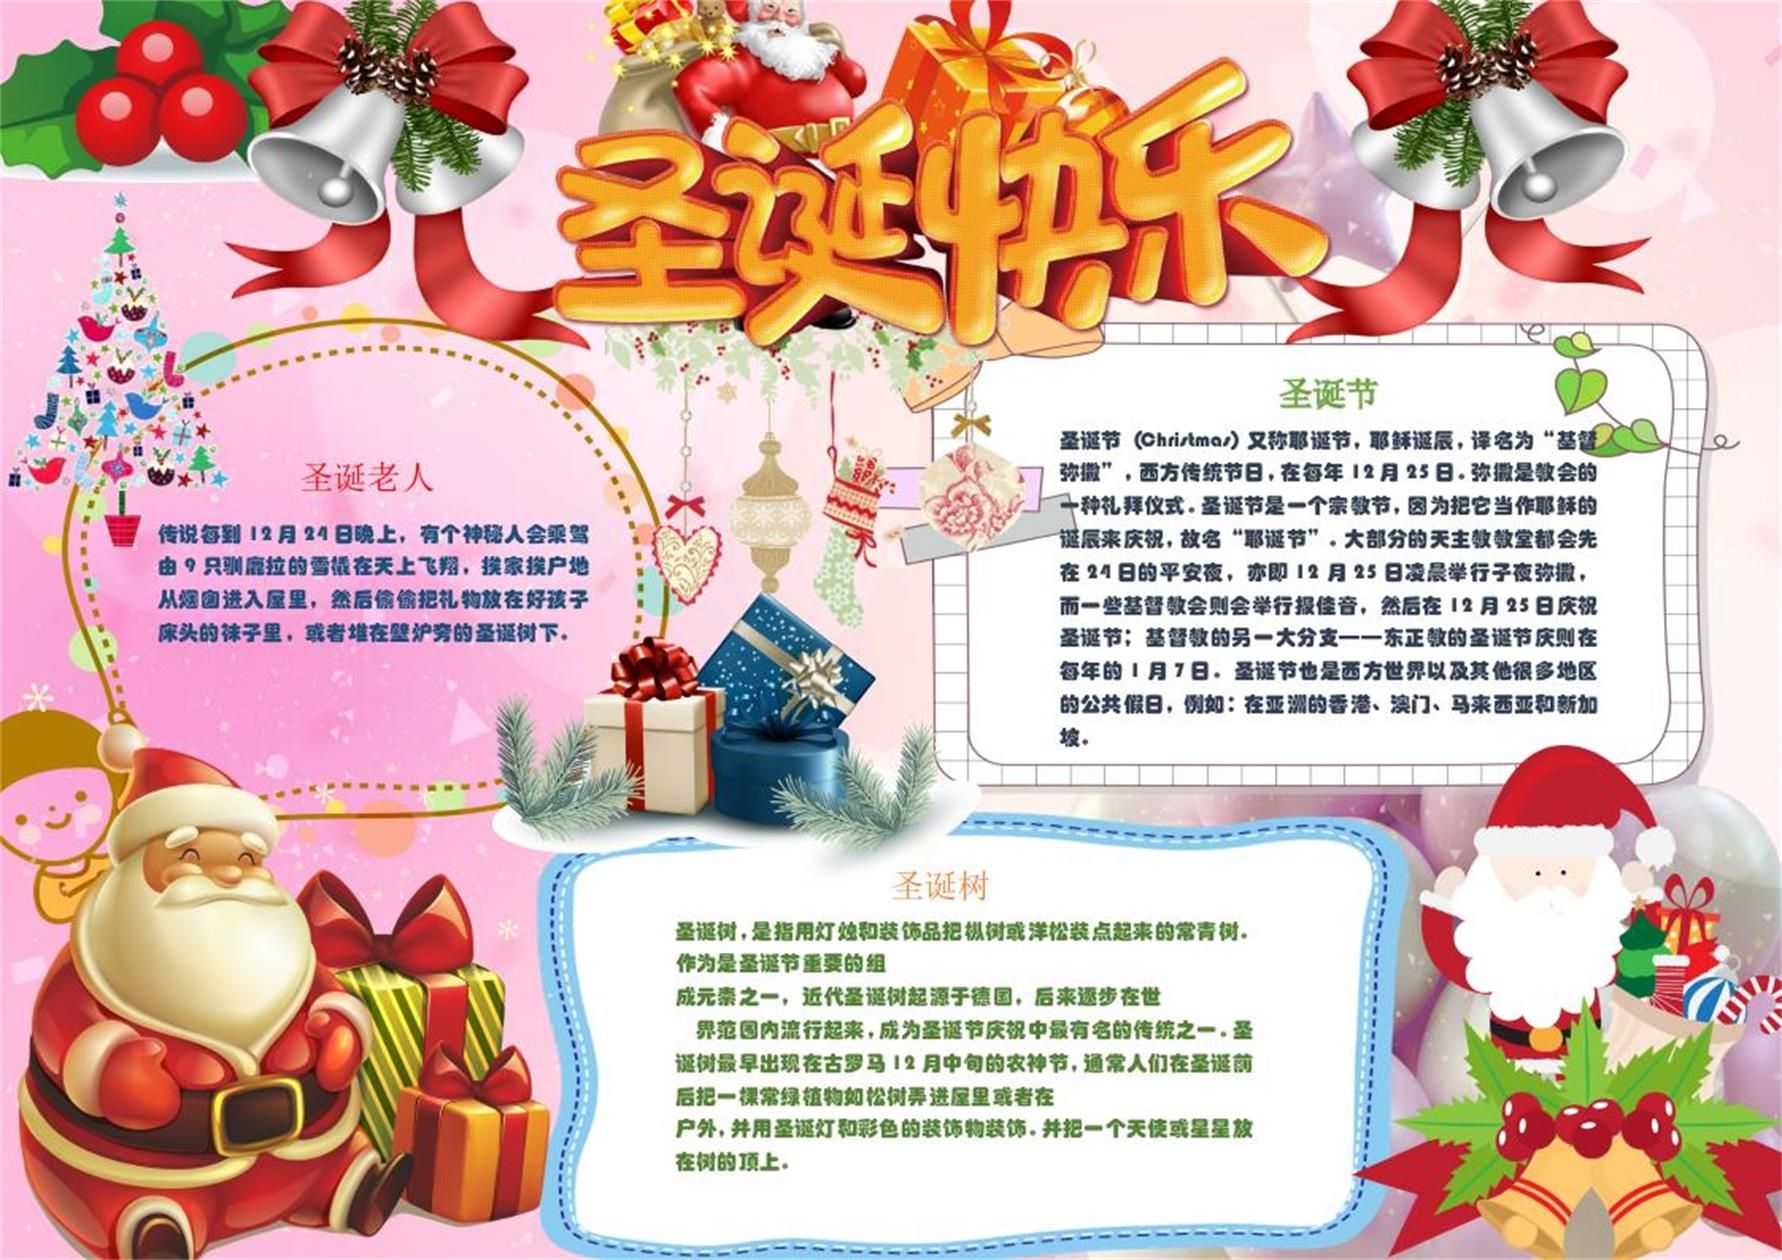 多彩圣诞节手抄报word模板 - 堆糖,美图壁纸兴趣社区